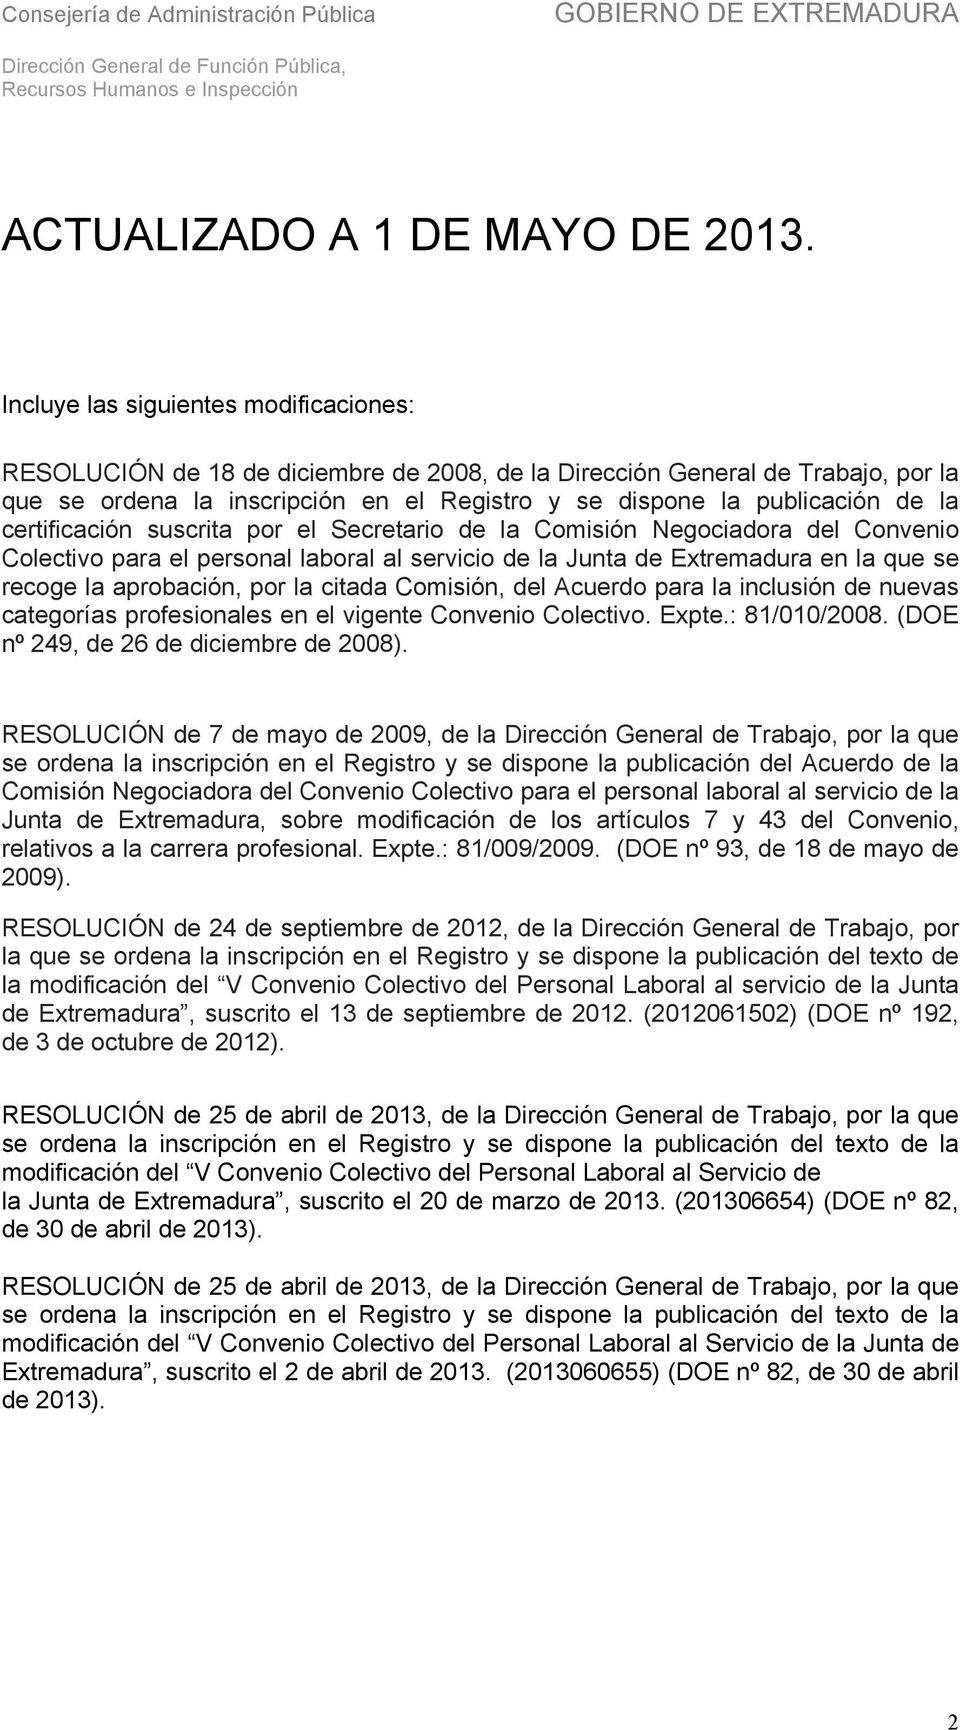 certificación suscrita por el Secretario de la Comisión Negociadora del Convenio Colectivo para el personal laboral al servicio de la Junta de Extremadura en la que se recoge la aprobación, por la